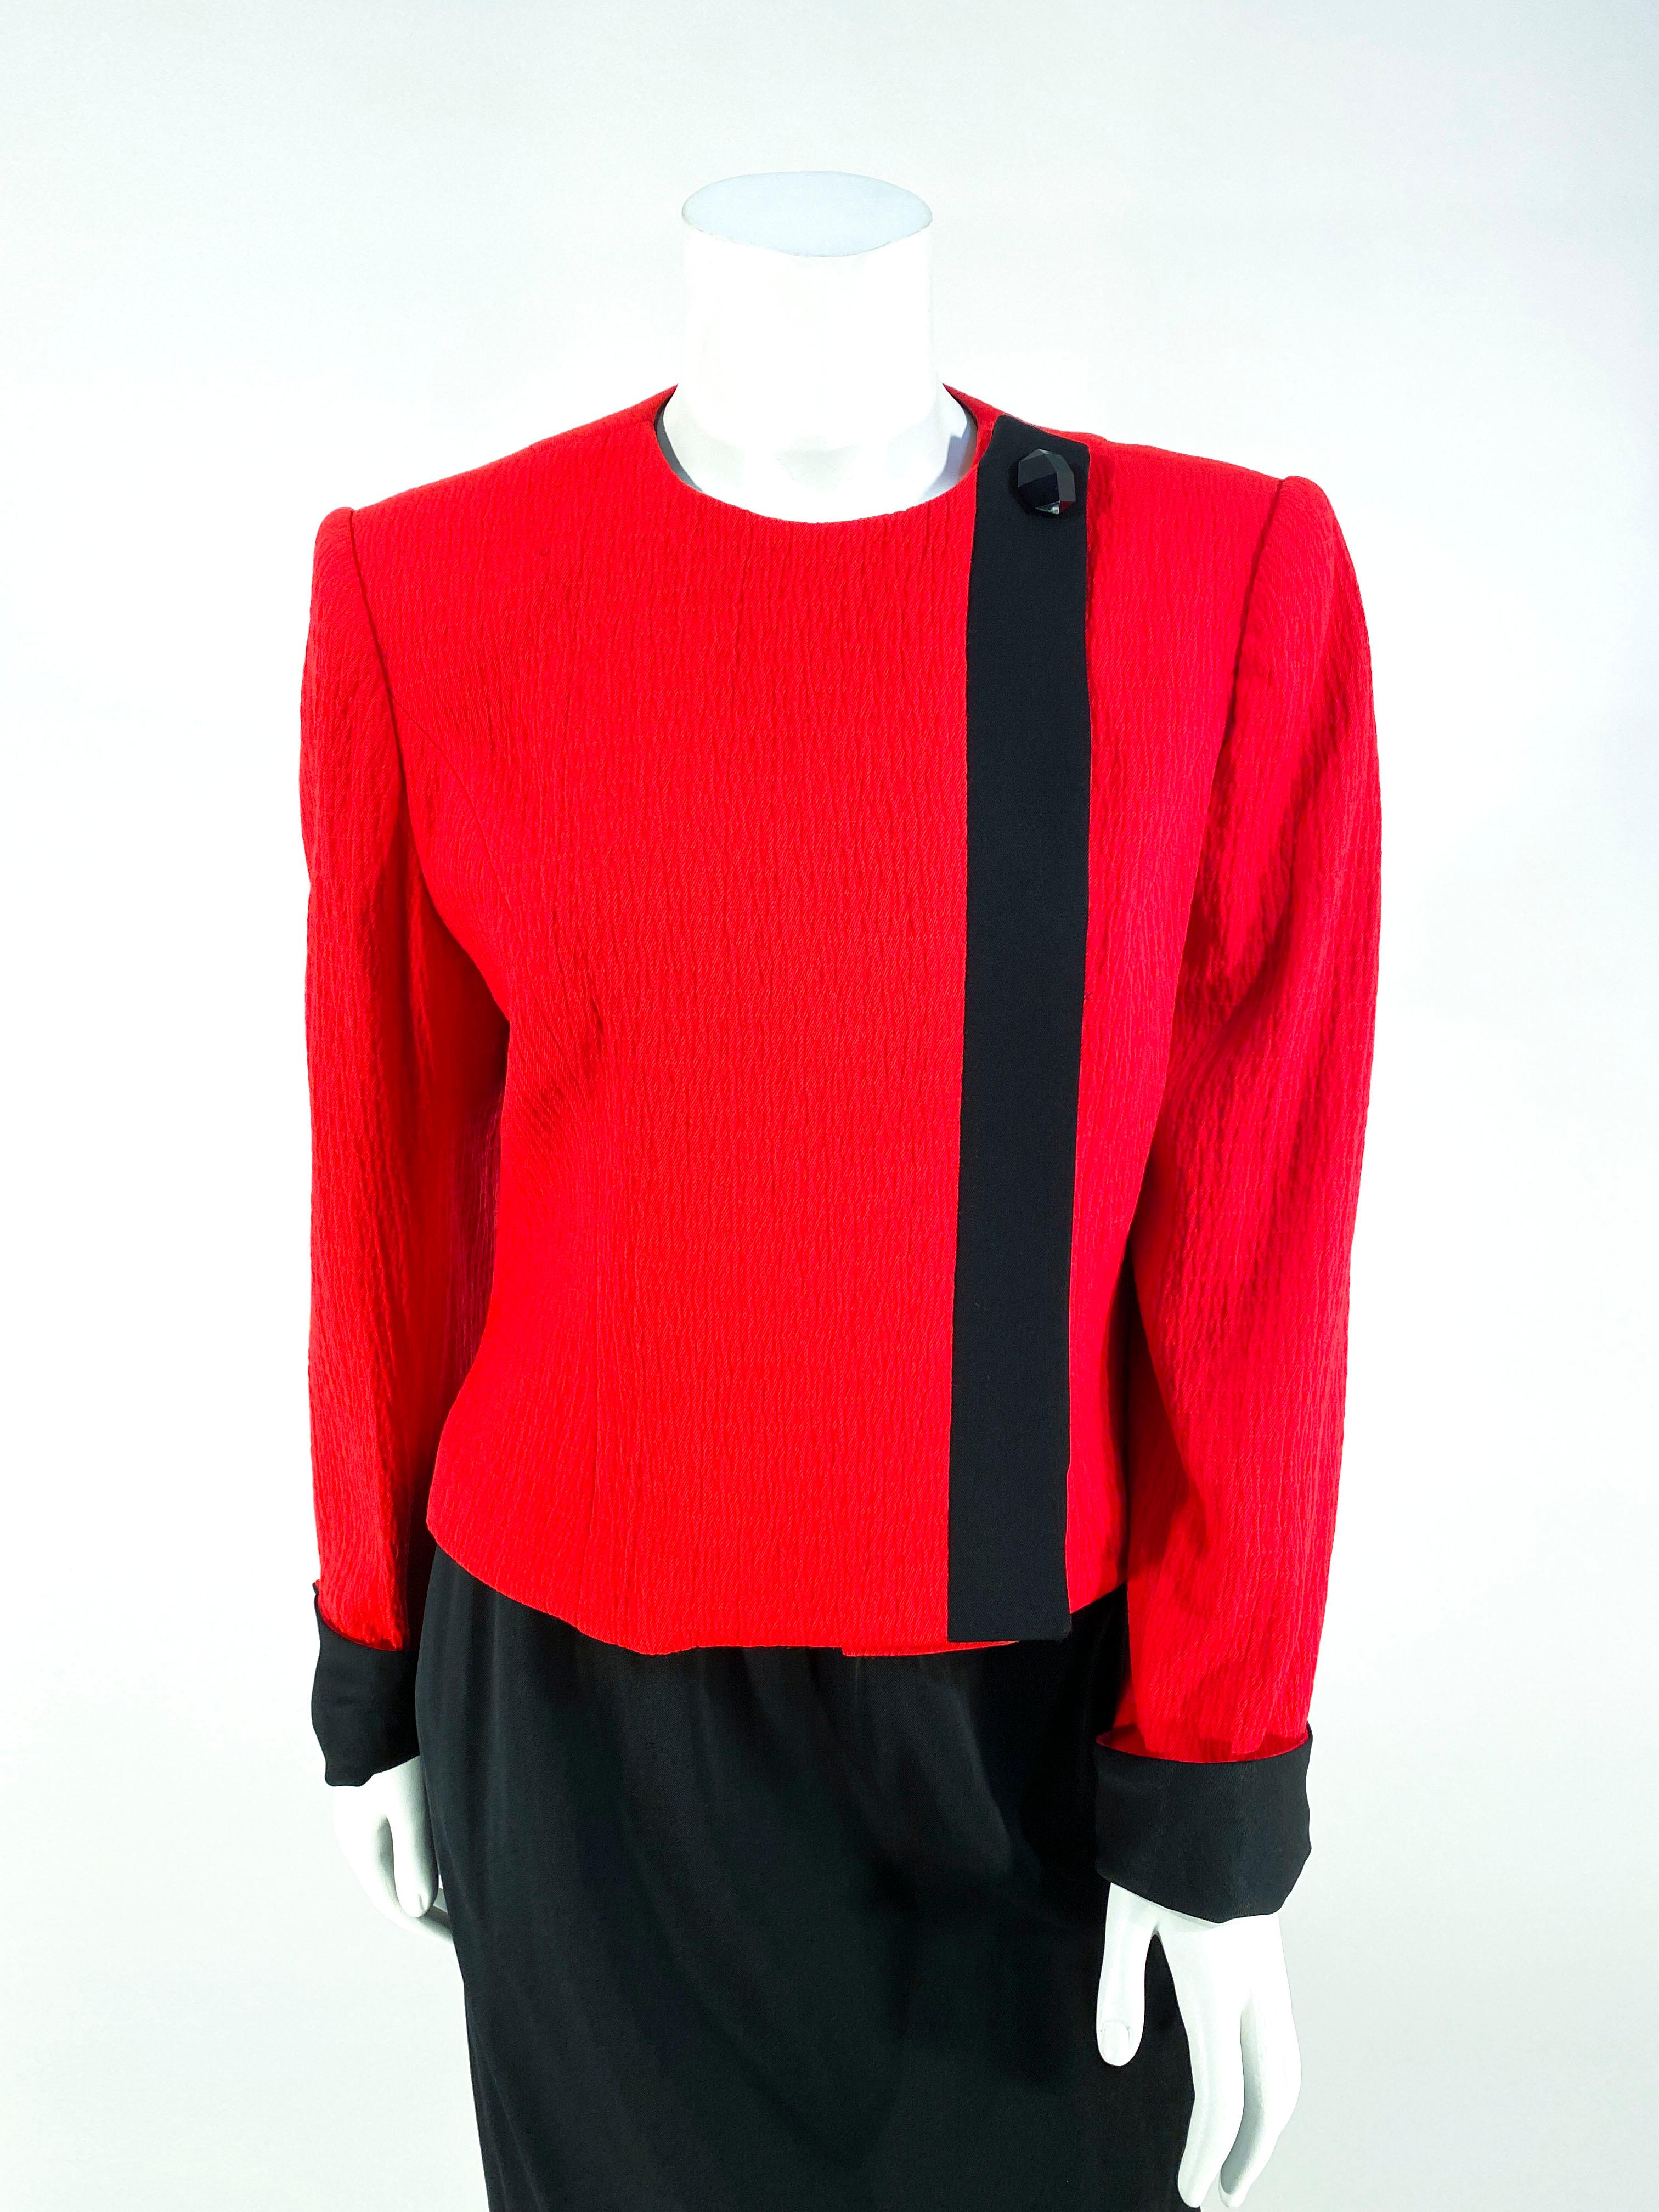 1980er David Hayes Rot-schwarzer asymmetrischer Anzug mit verdecktem Knopfverschluss vorne, schwarzer Bordüre und Zierknopf am Ausschnitt. Die Manschetten sind mit dem passenden schwarzen Twill aufgerollt. Der gerade Rock ist schwarz und hat einen